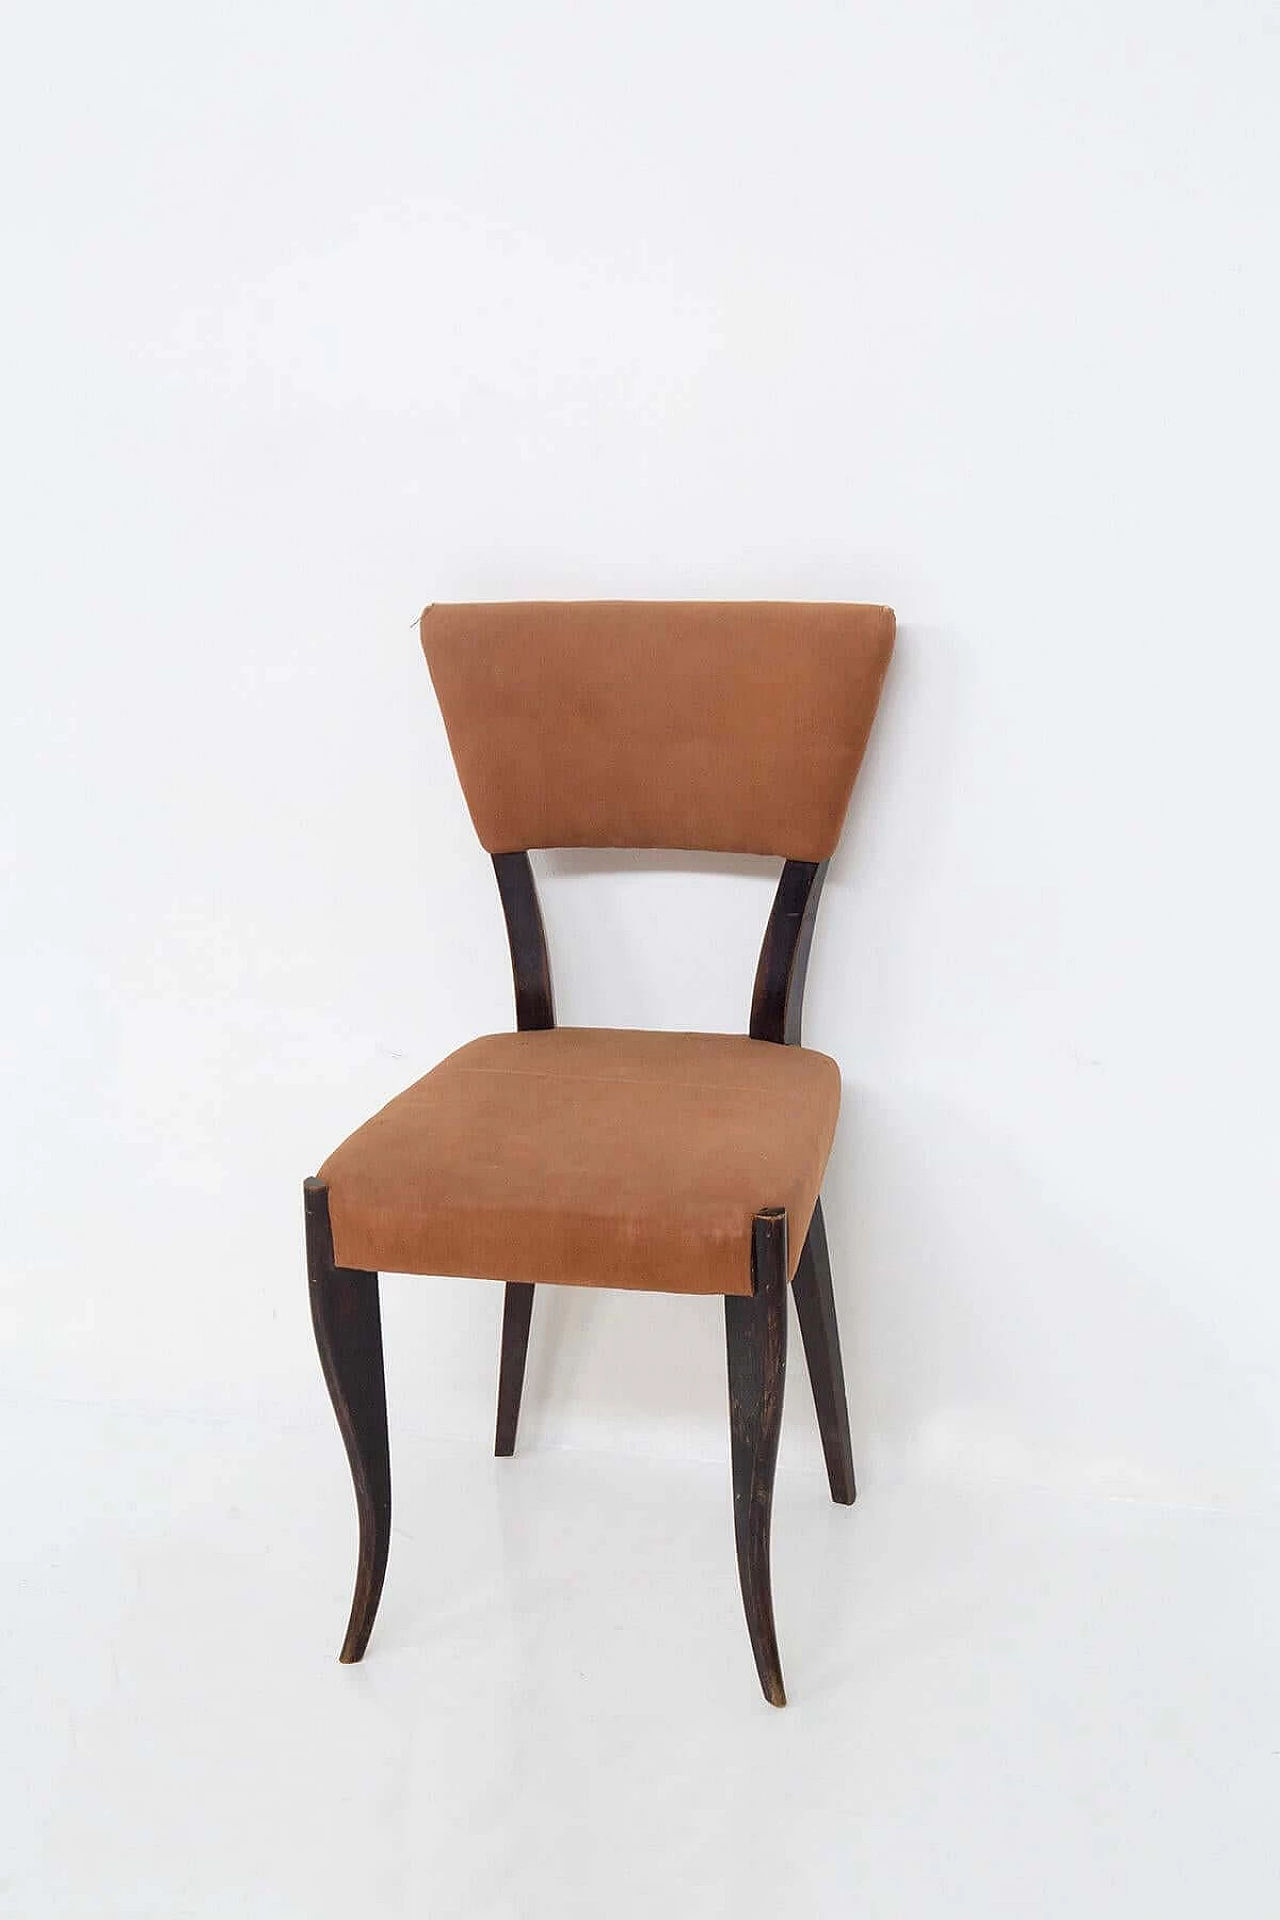 5 original orange velvet chairs, 1950s 1